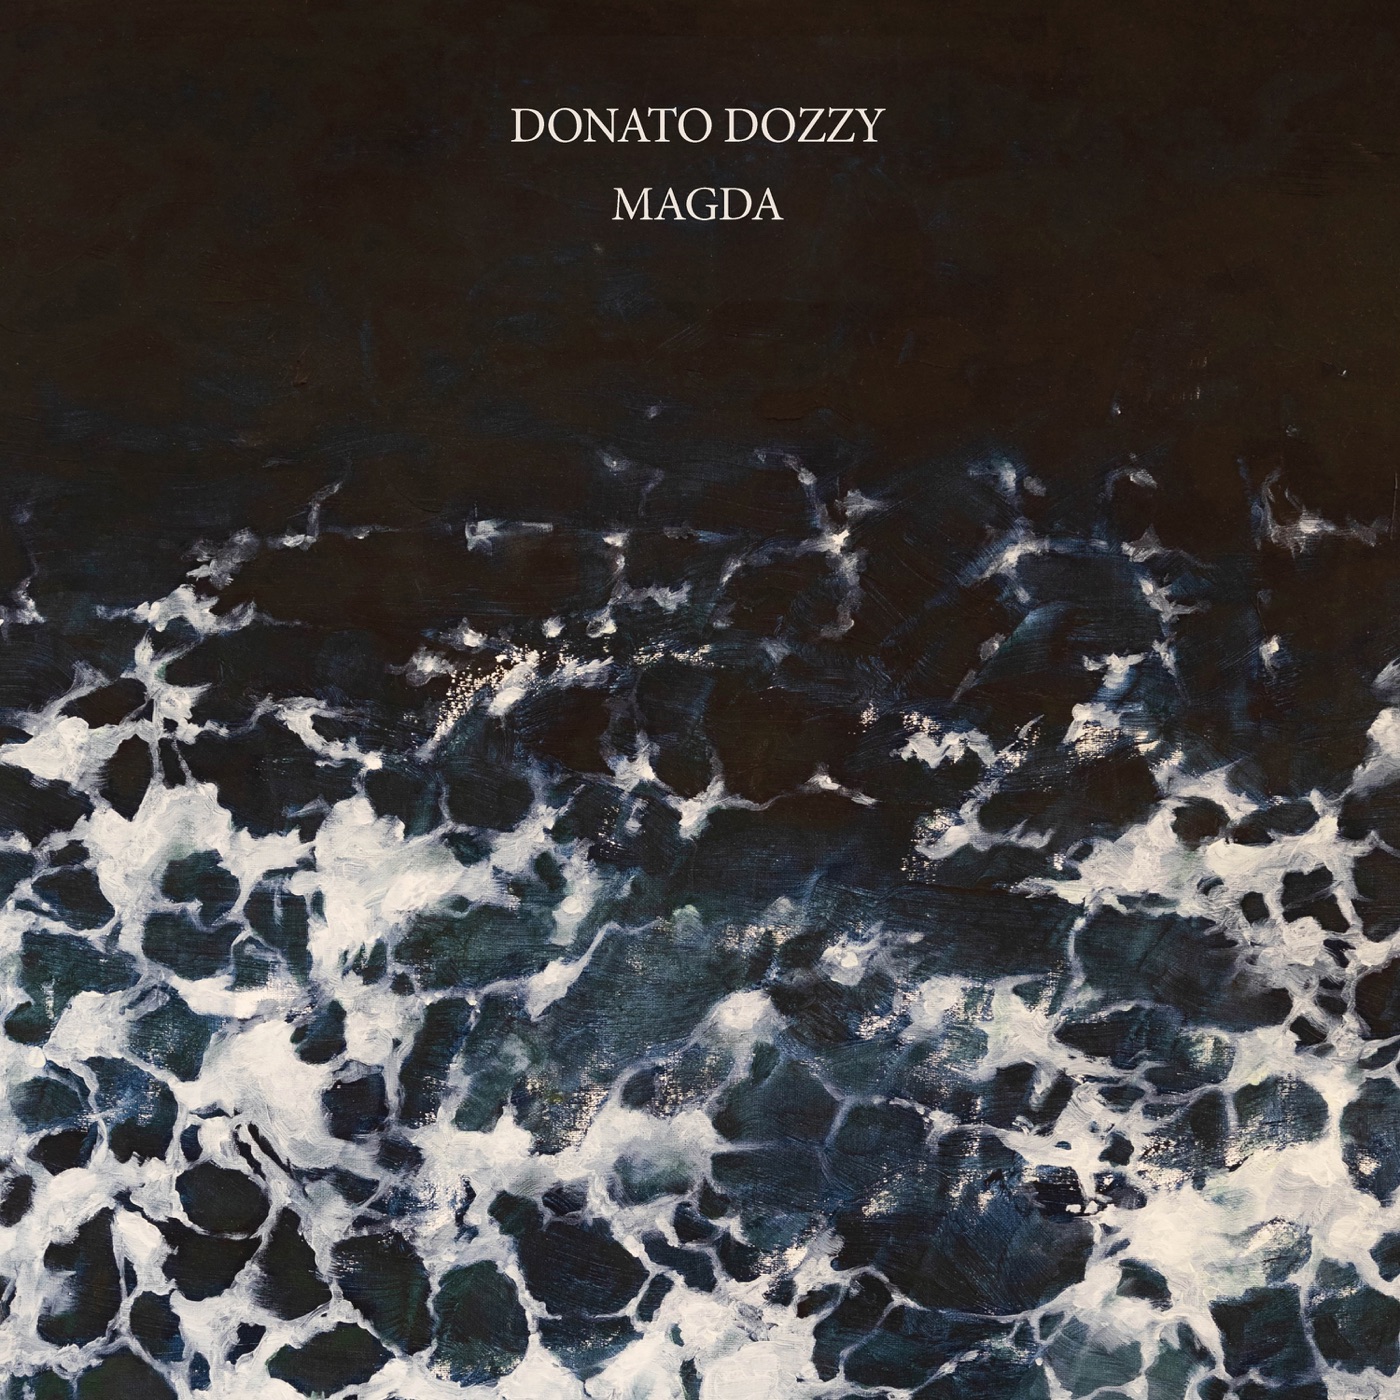 Magda by Donato Dozzy